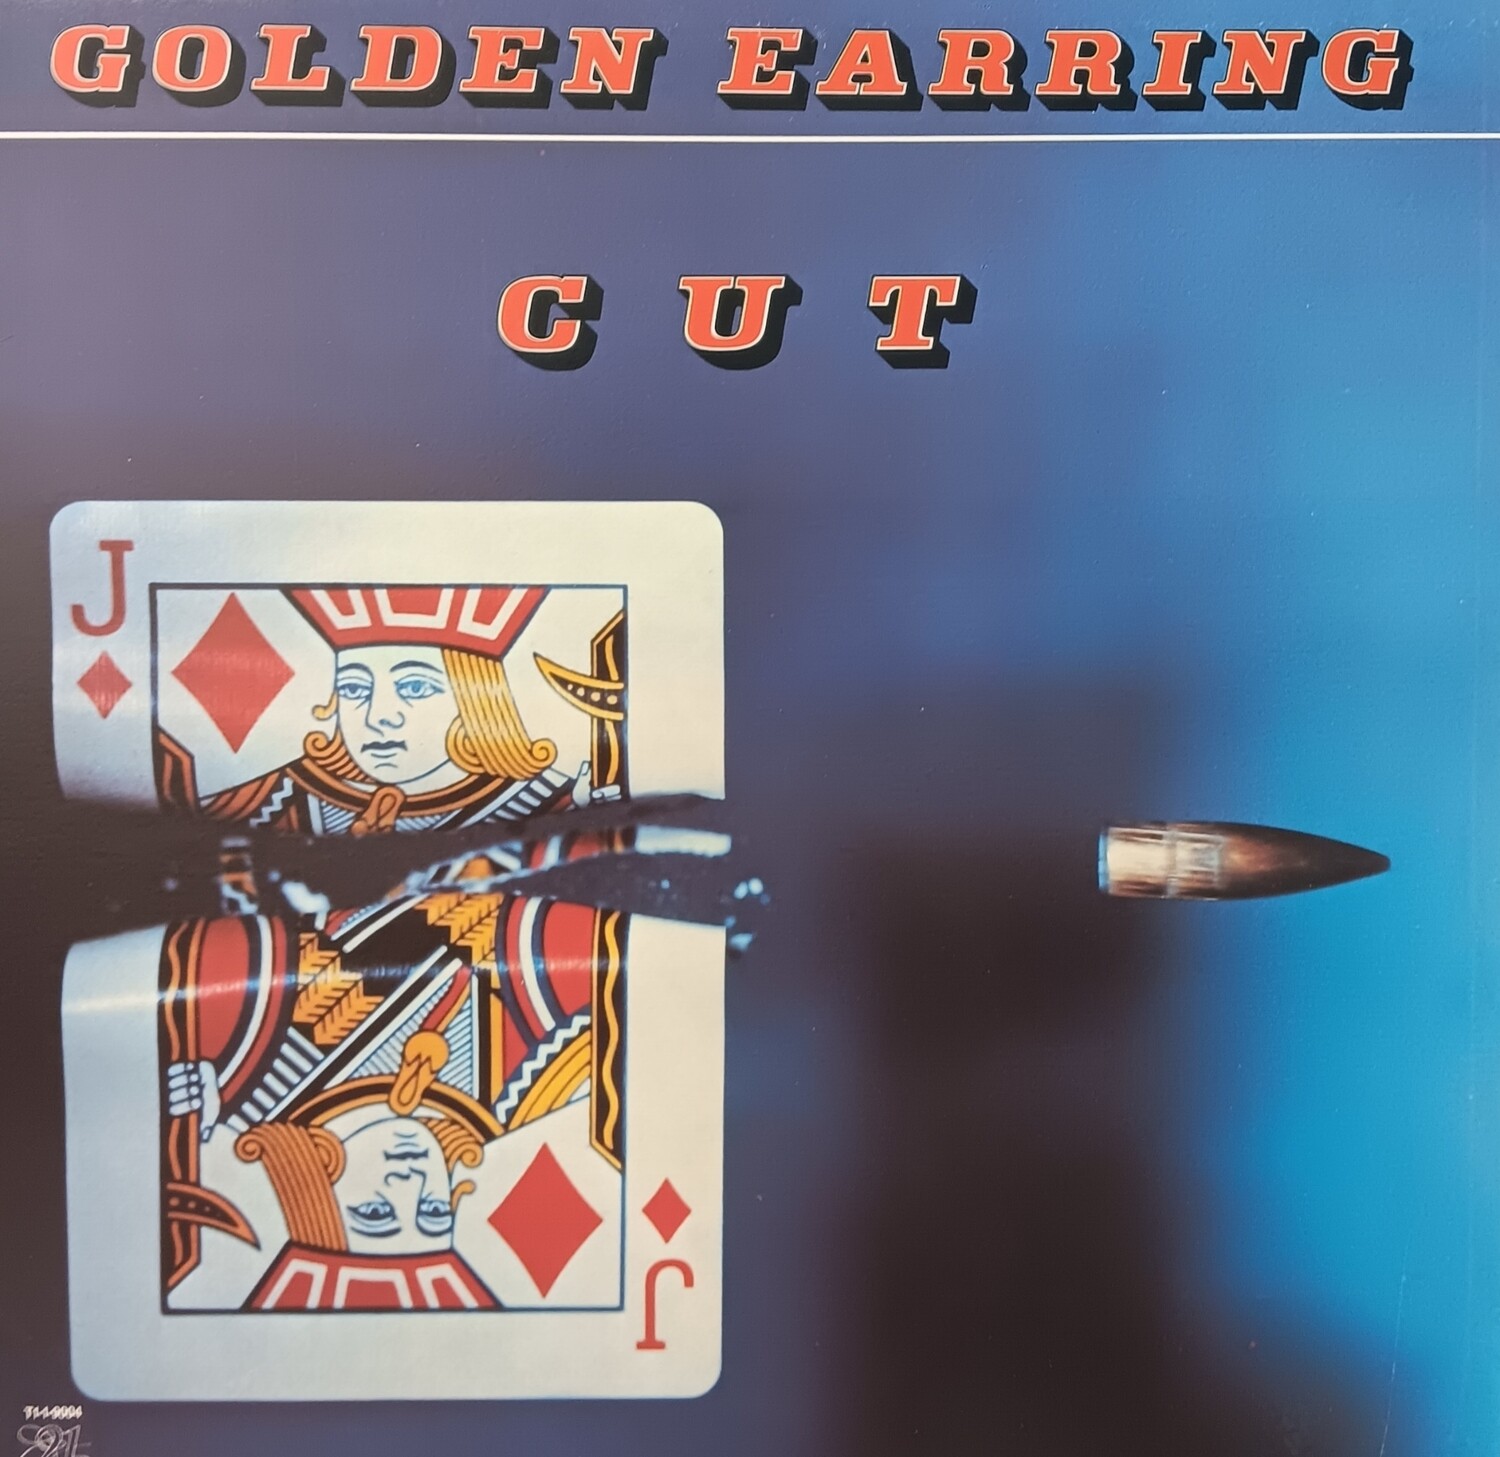 GOLDEN EARRING - CUT